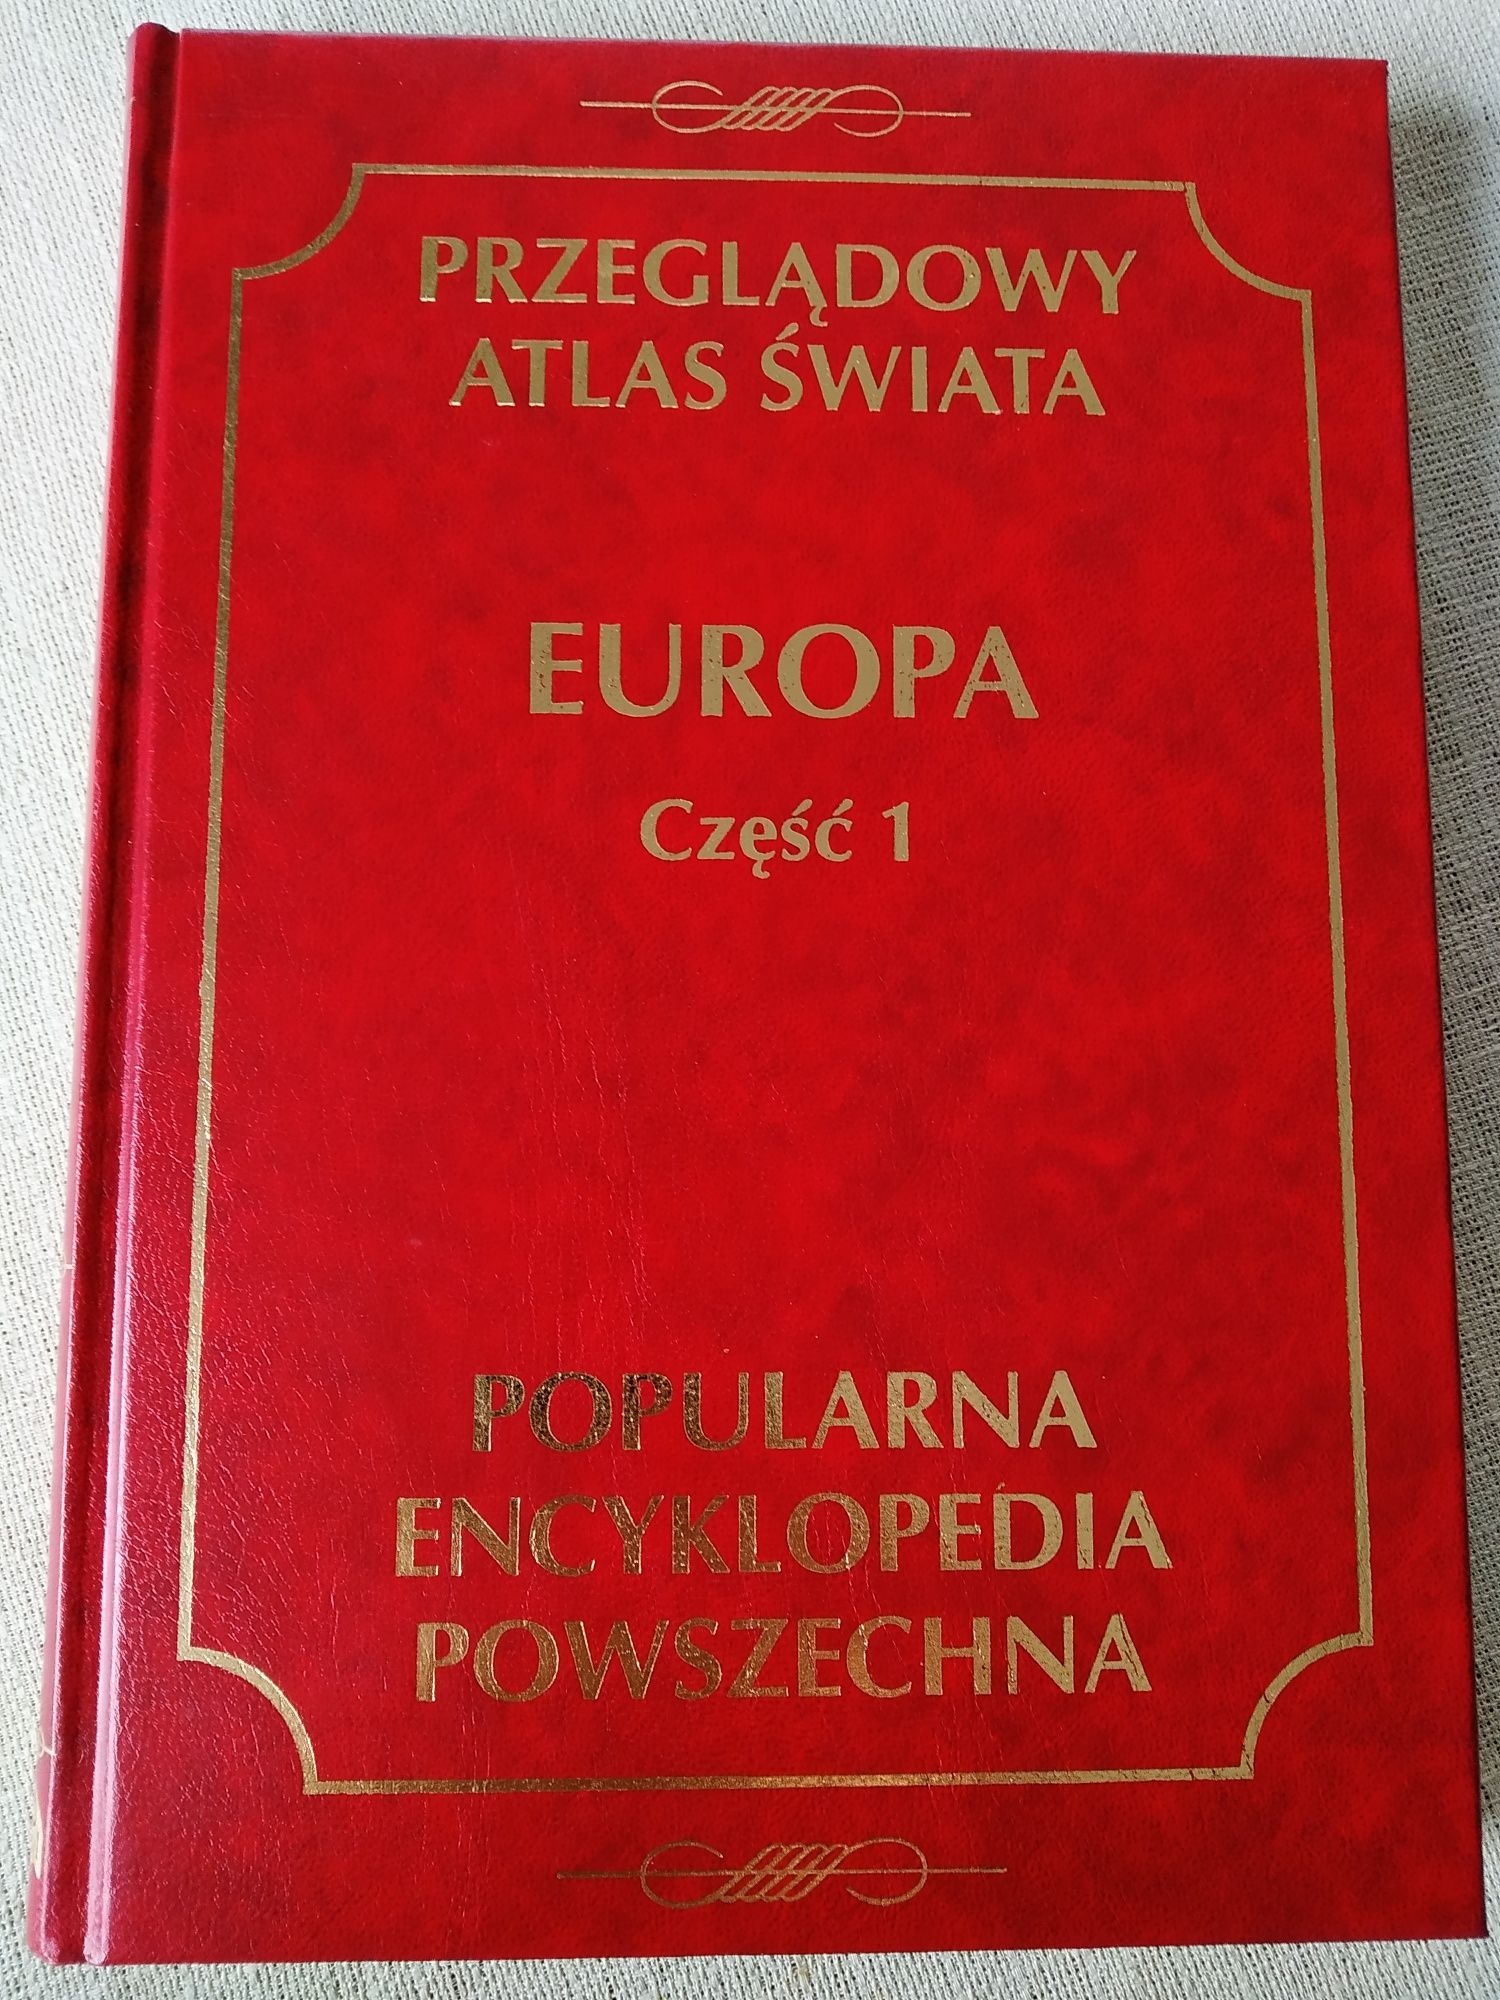 Przeglądowy atlas świata. Wydawnictwo Fogra